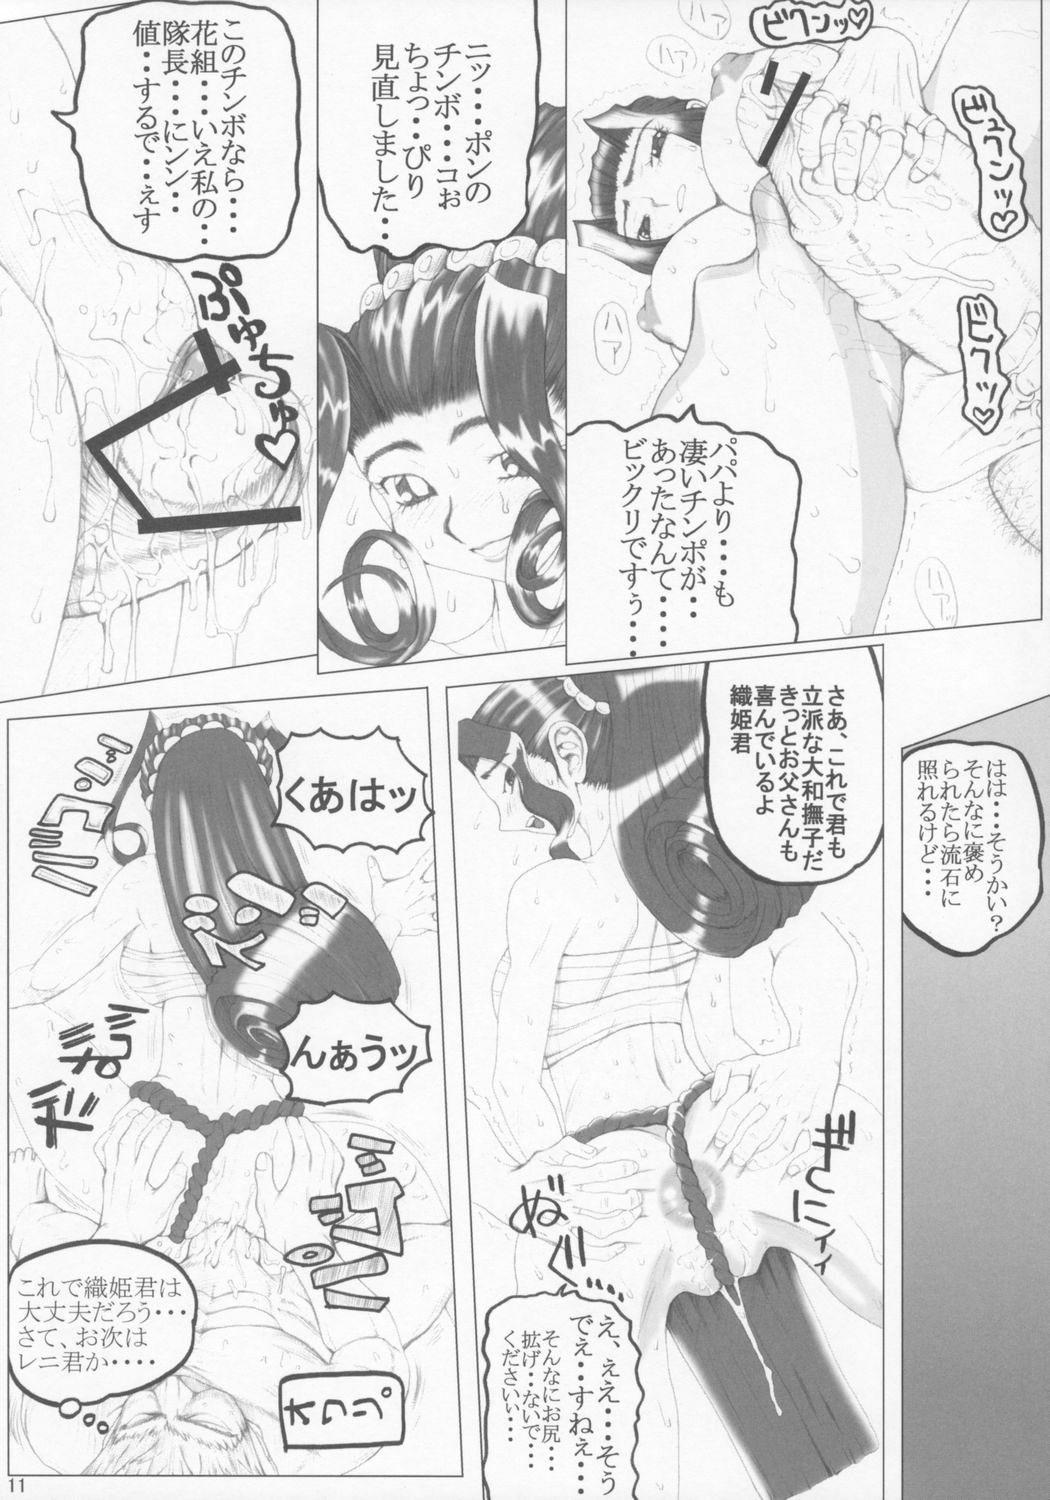 Cornudo Han - Sakura taisen Juicy - Page 10